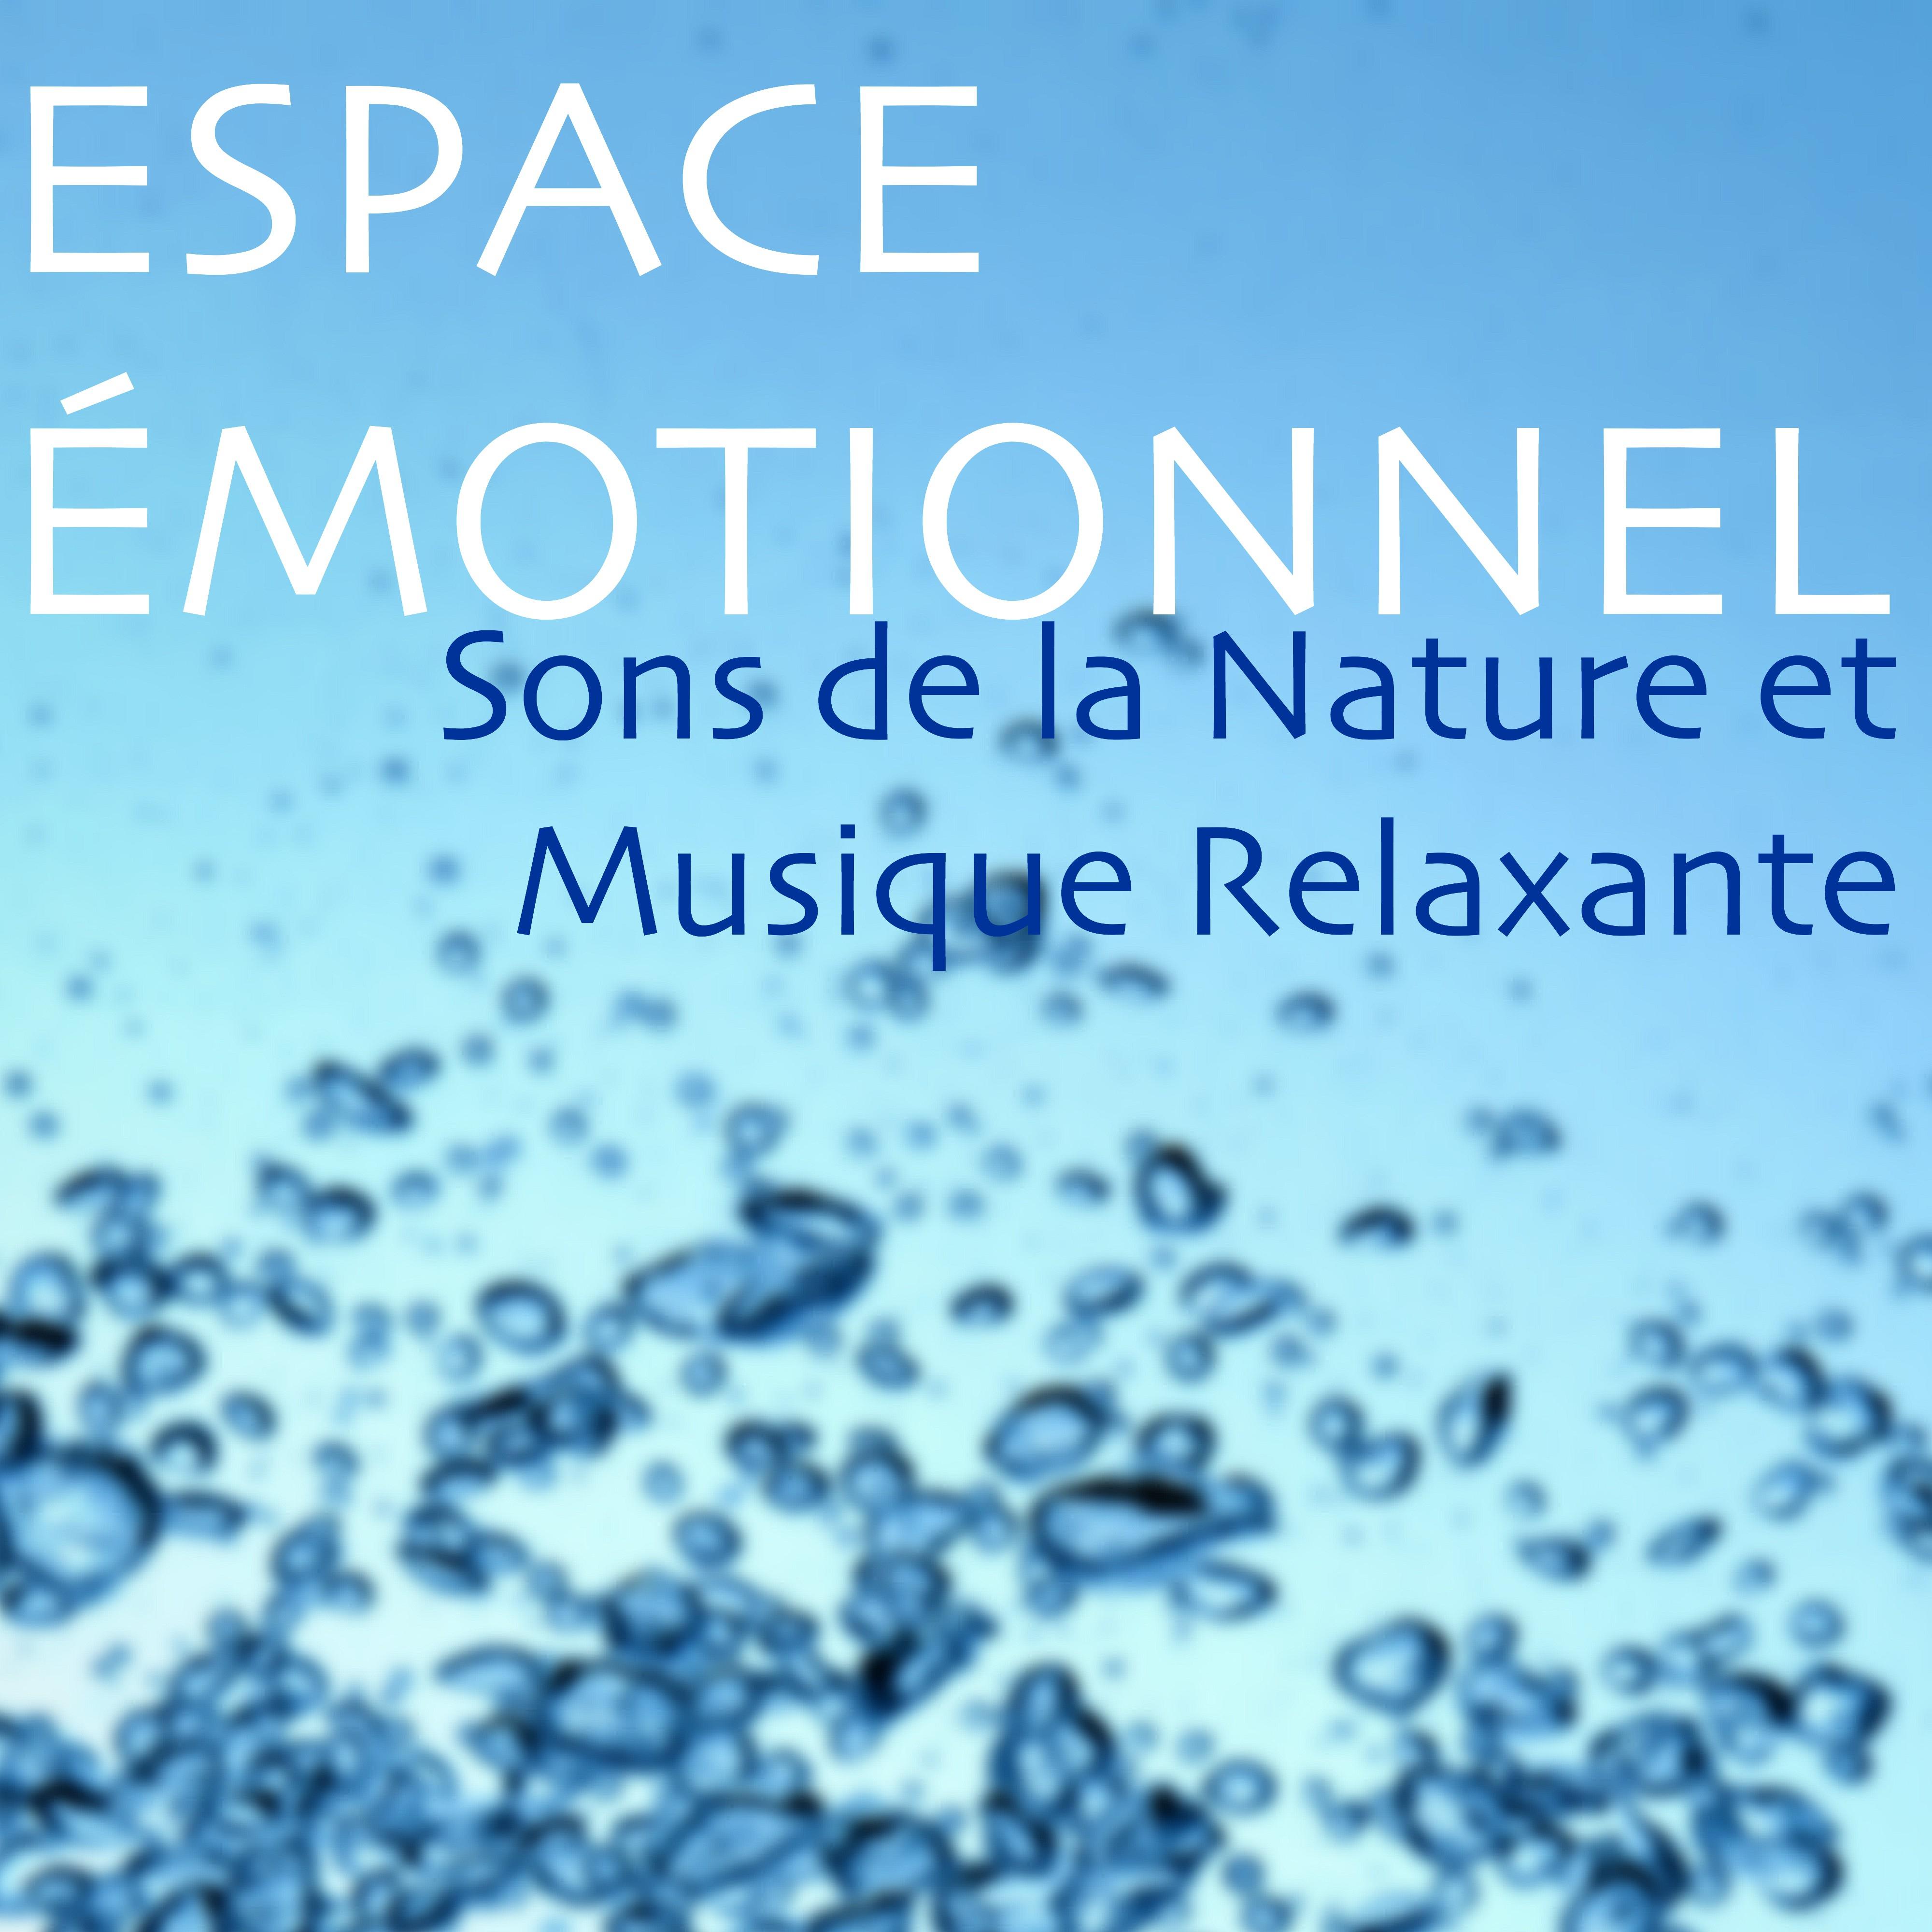 Espace Émotionnel – Sons de la Nature et Musique Relaxante pour Musicothérapie, Bien-être, Santé et Relaxation